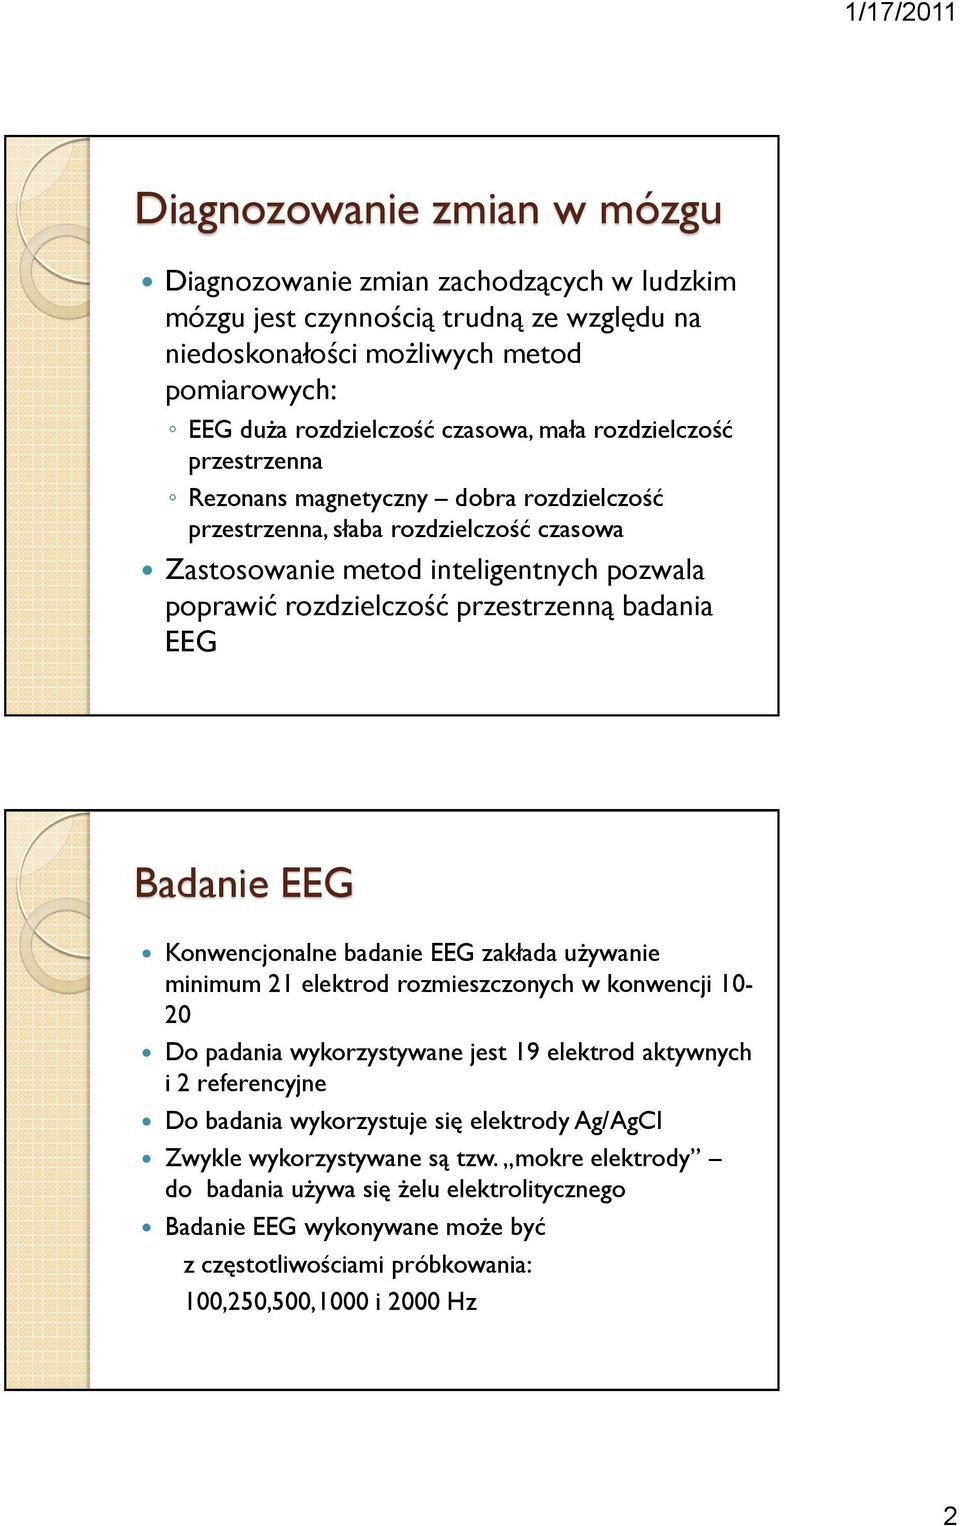 Badanie EEG Konwencjonalne badanie EEG zakłada używanie minimum 21 elektrod rozmieszczonych w konwencji 10-20 Do padania wykorzystywane jest 19 elektrod aktywnych i 2 referencyjne Do badania